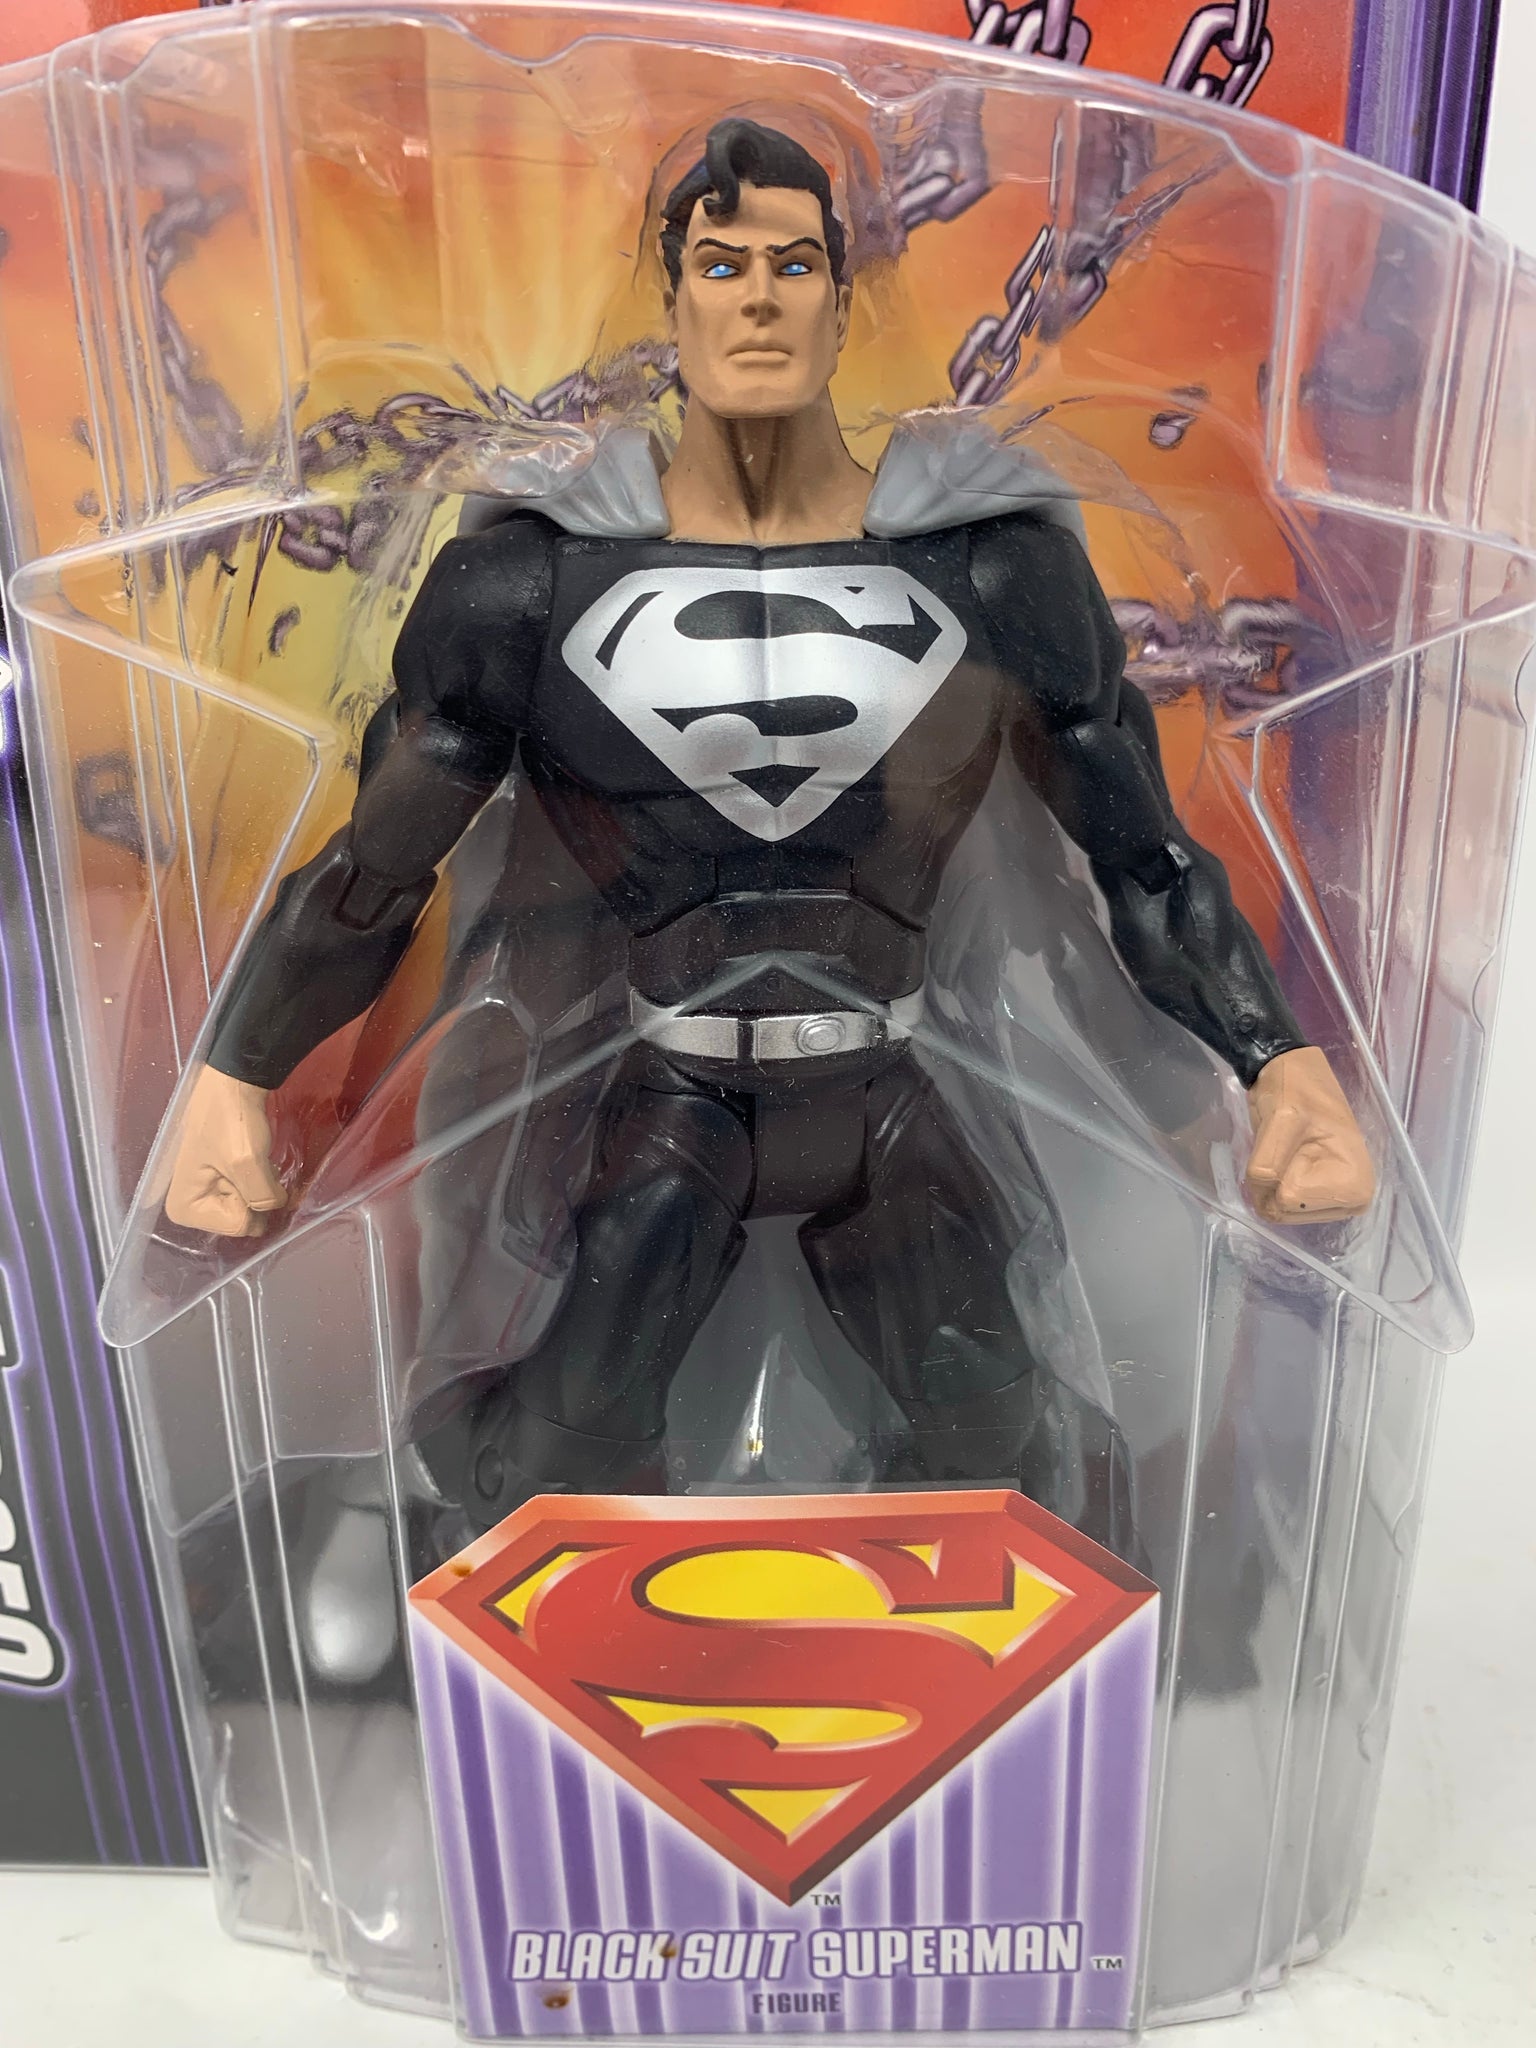 Superman Black Suit Details Revealed for Snyder Cut